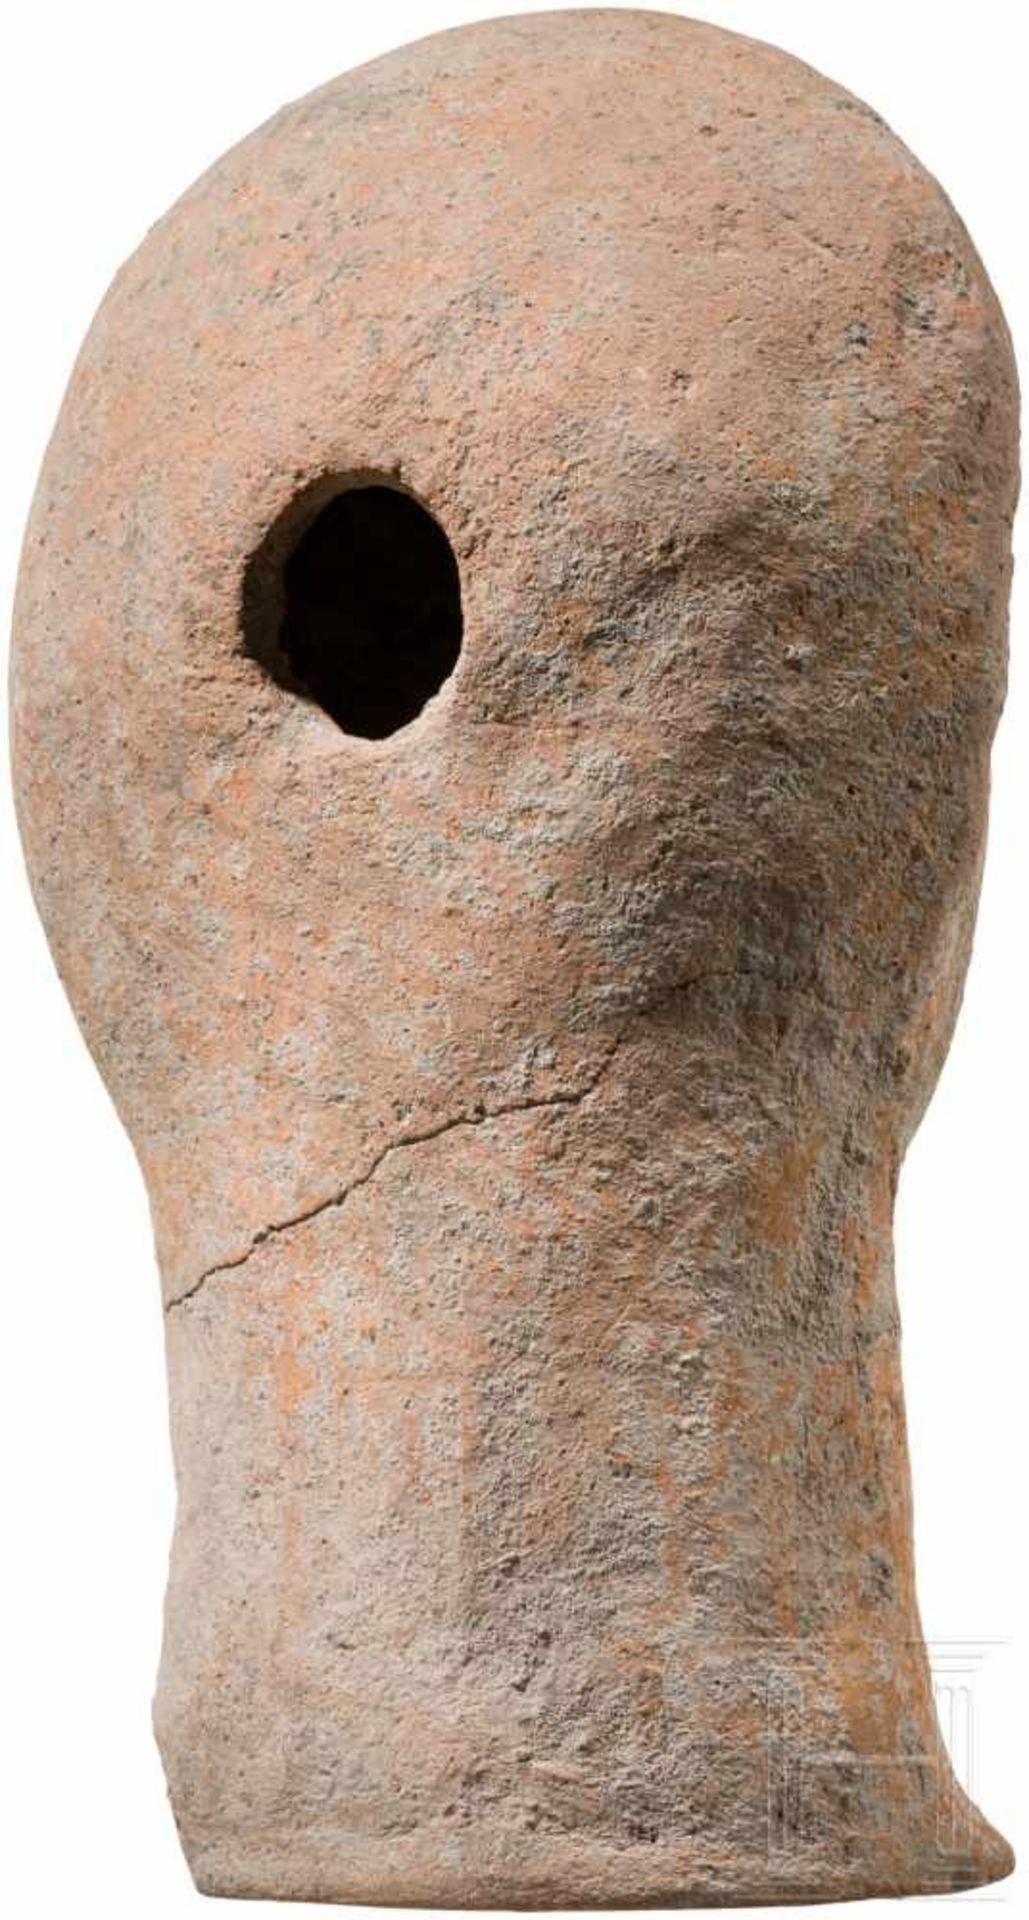 Etruskischer Votivkopf aus Ton, 3. - 2. Jhdt. v. Chr.Leicht unterlebensgroßer Terrakottakopf eines - Bild 4 aus 4